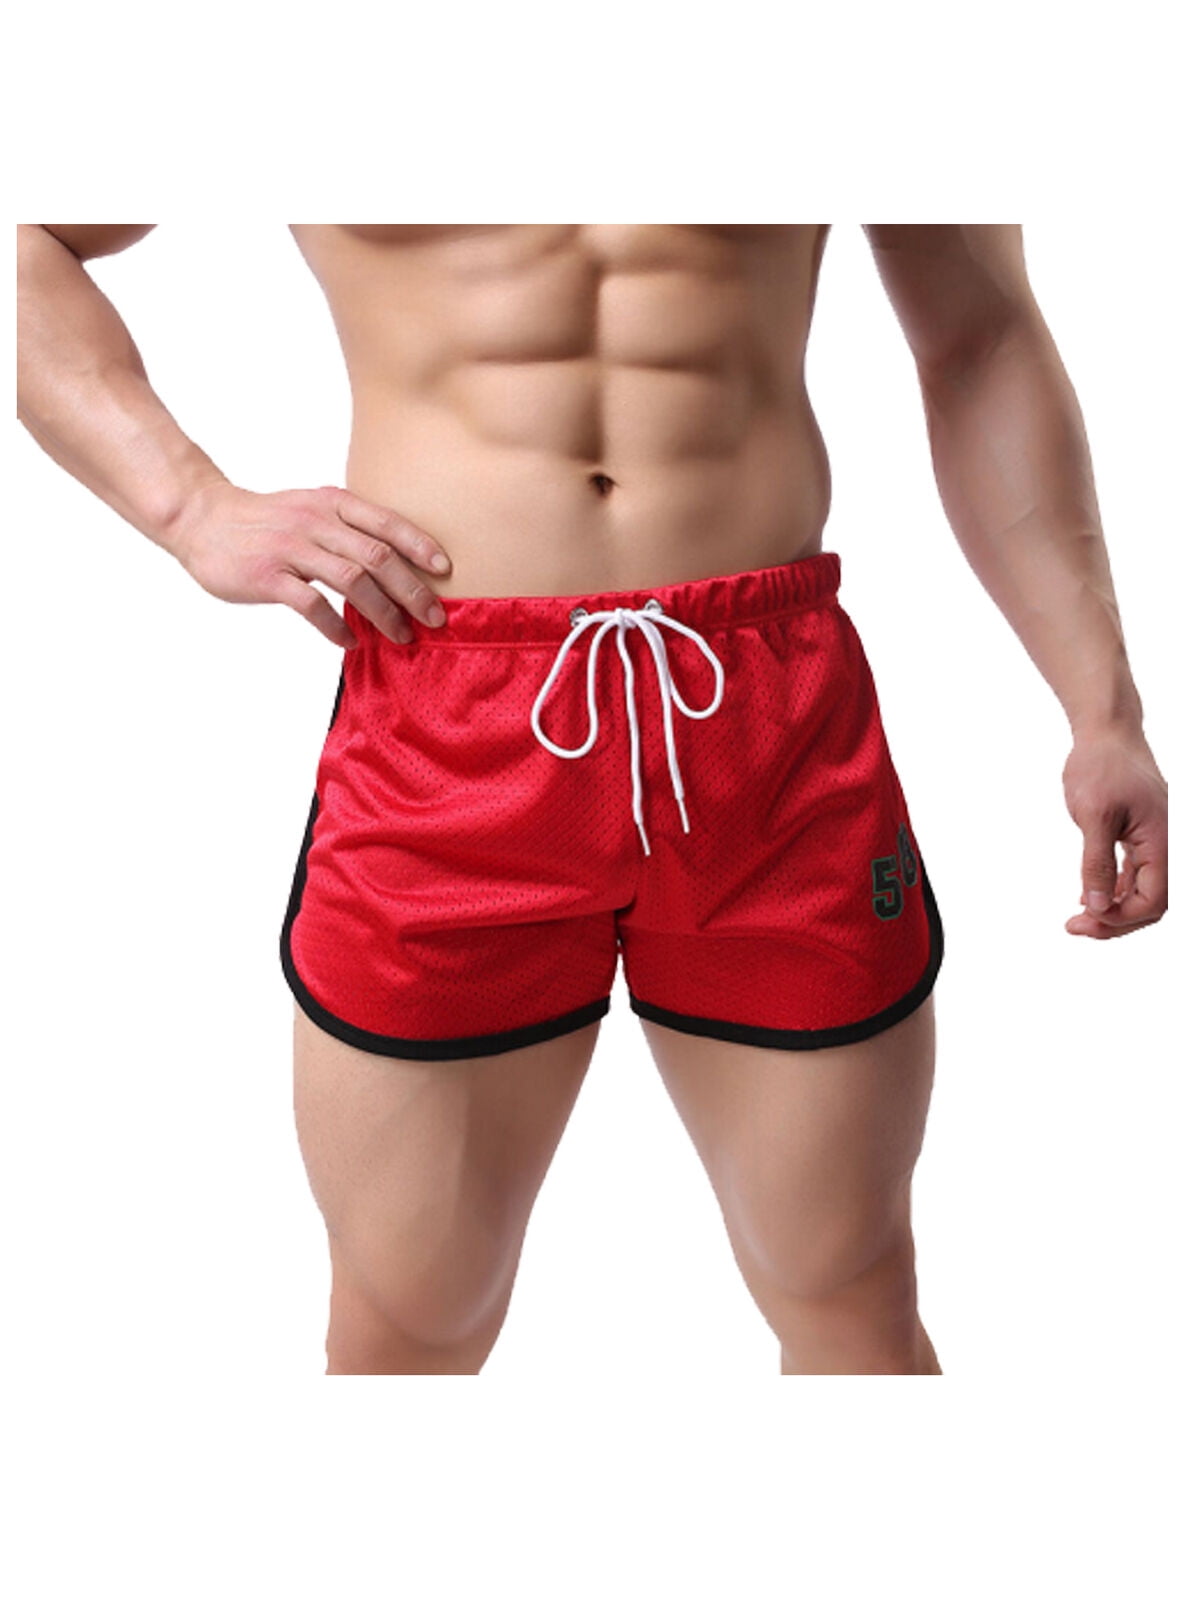 Gym shorts. Красные шорты мужские. Шорты мужские спортивные. Шорты для фитнеса мужские. Шорты для бодибилдинга.